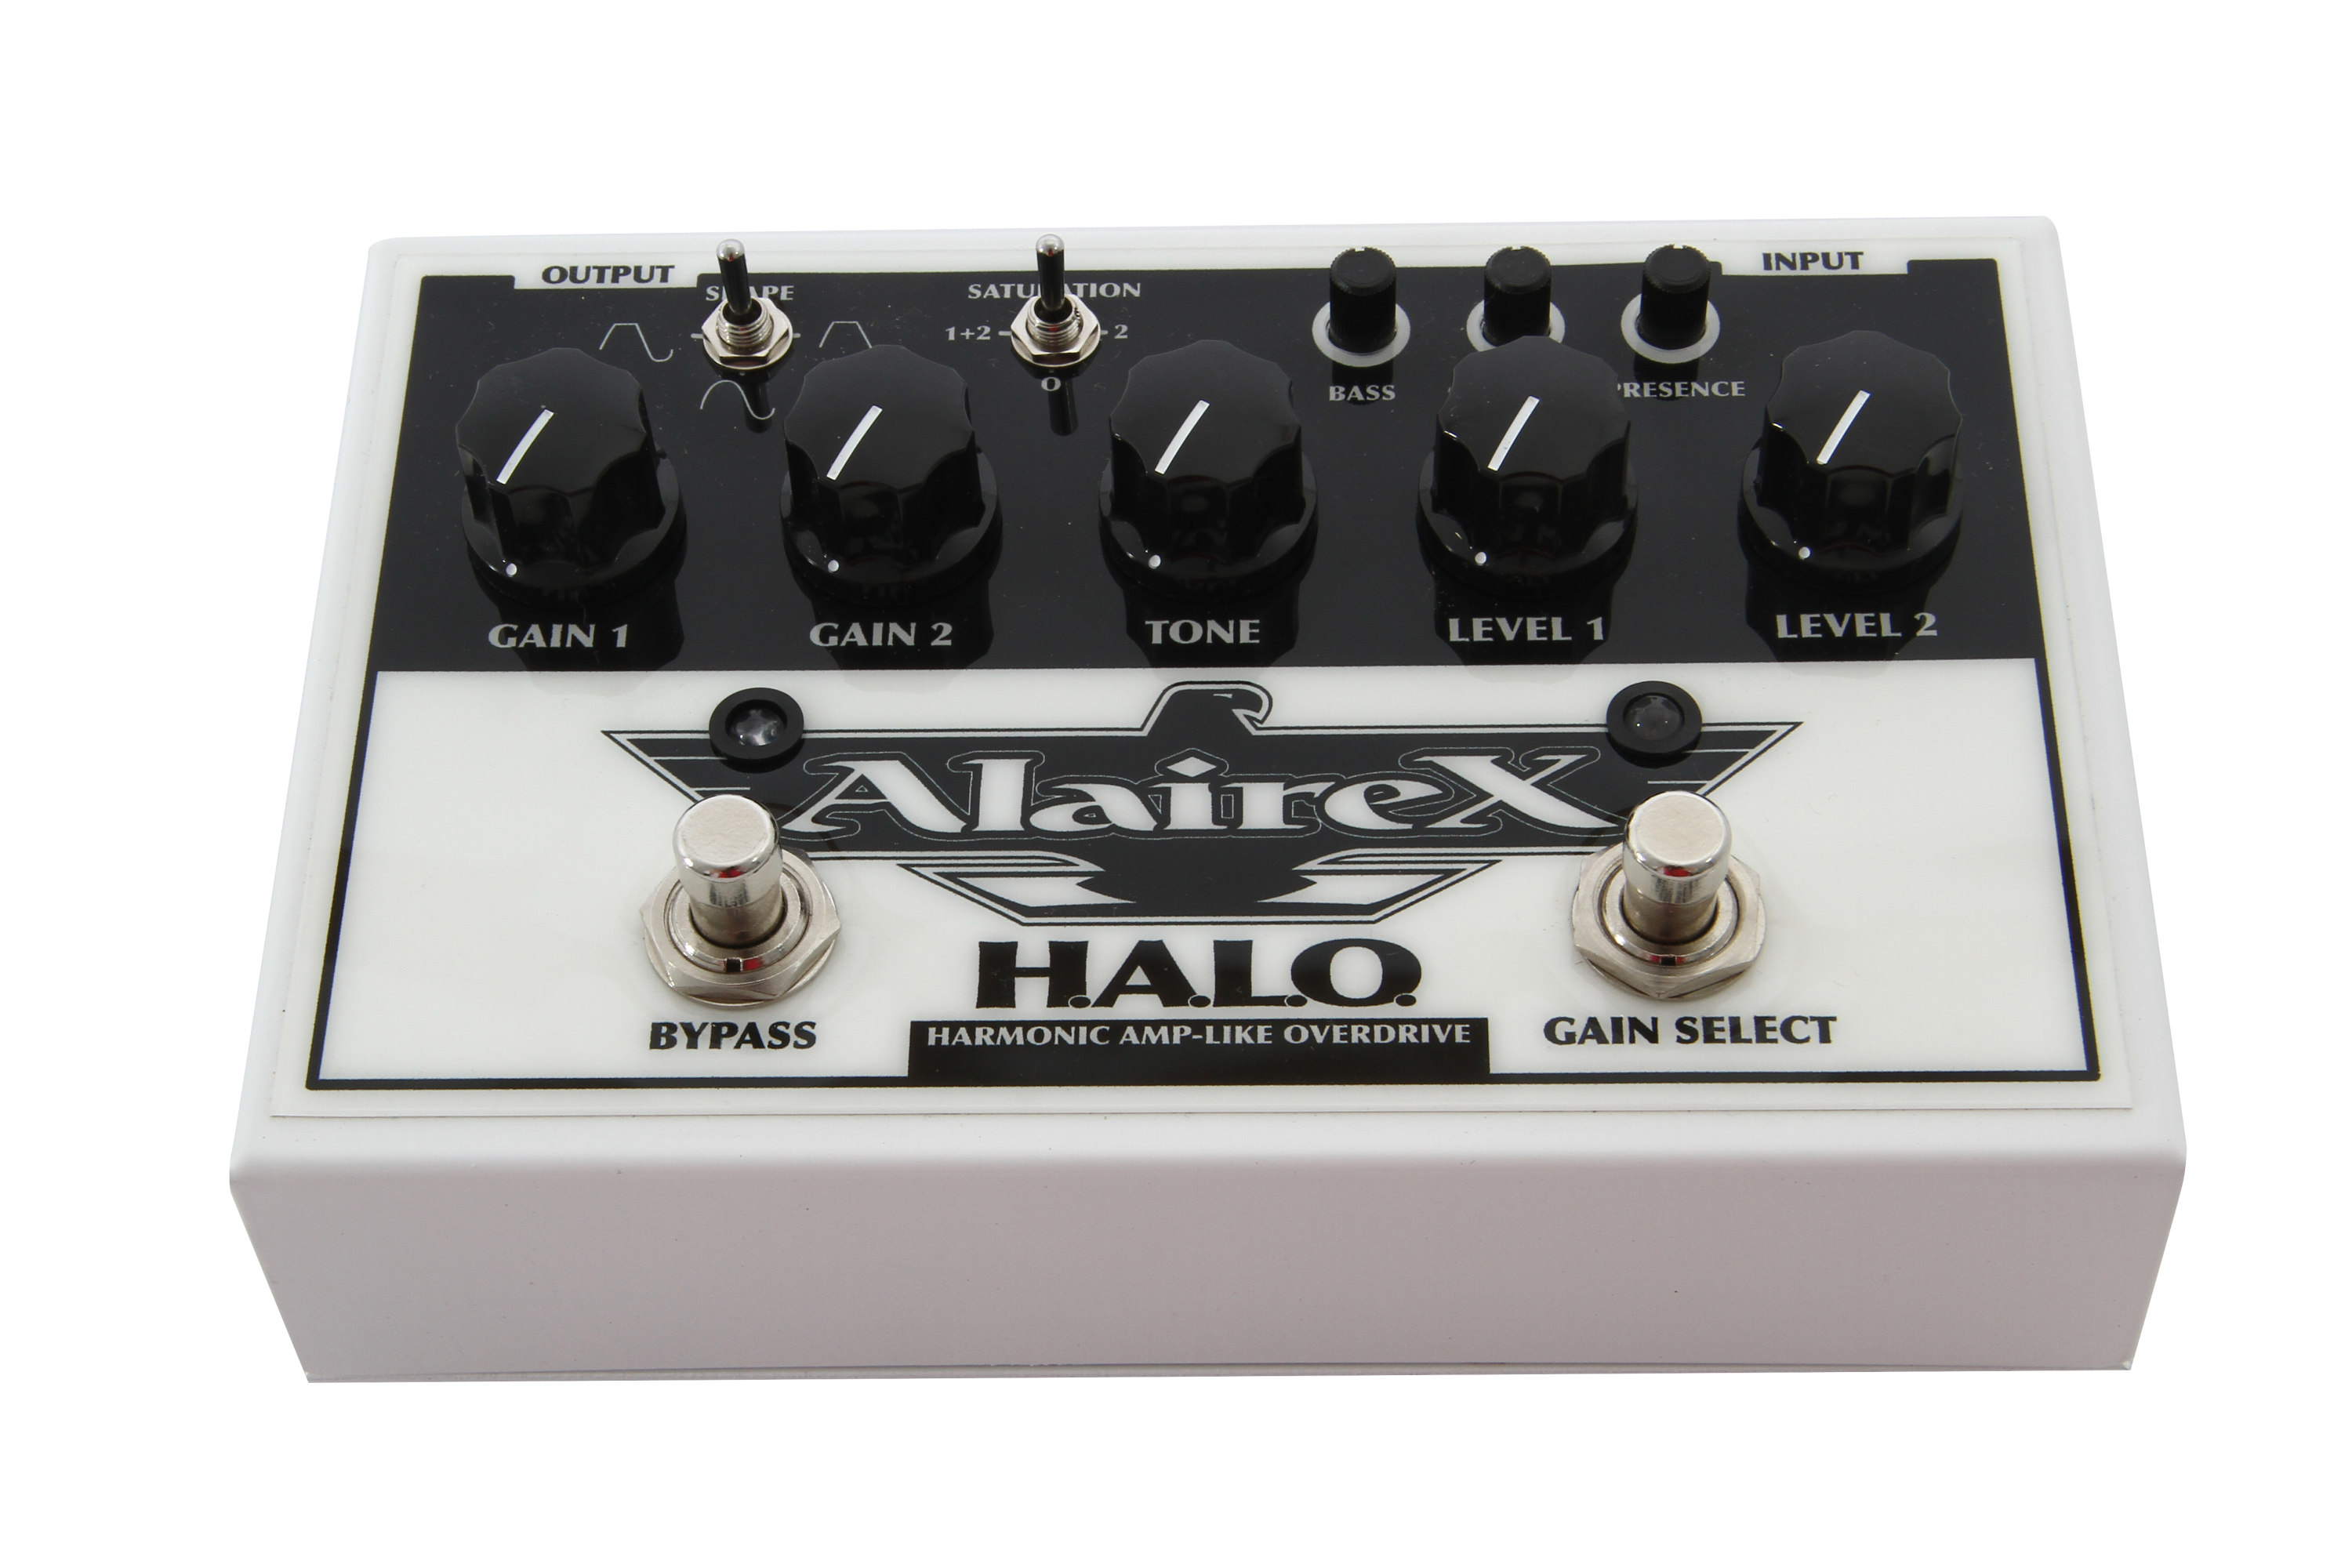 純正購入◆ Alairex H.A.L.O Harmonic Amp Like Overdrive オーバードライブ エフェクター ◆ オーバードライブ